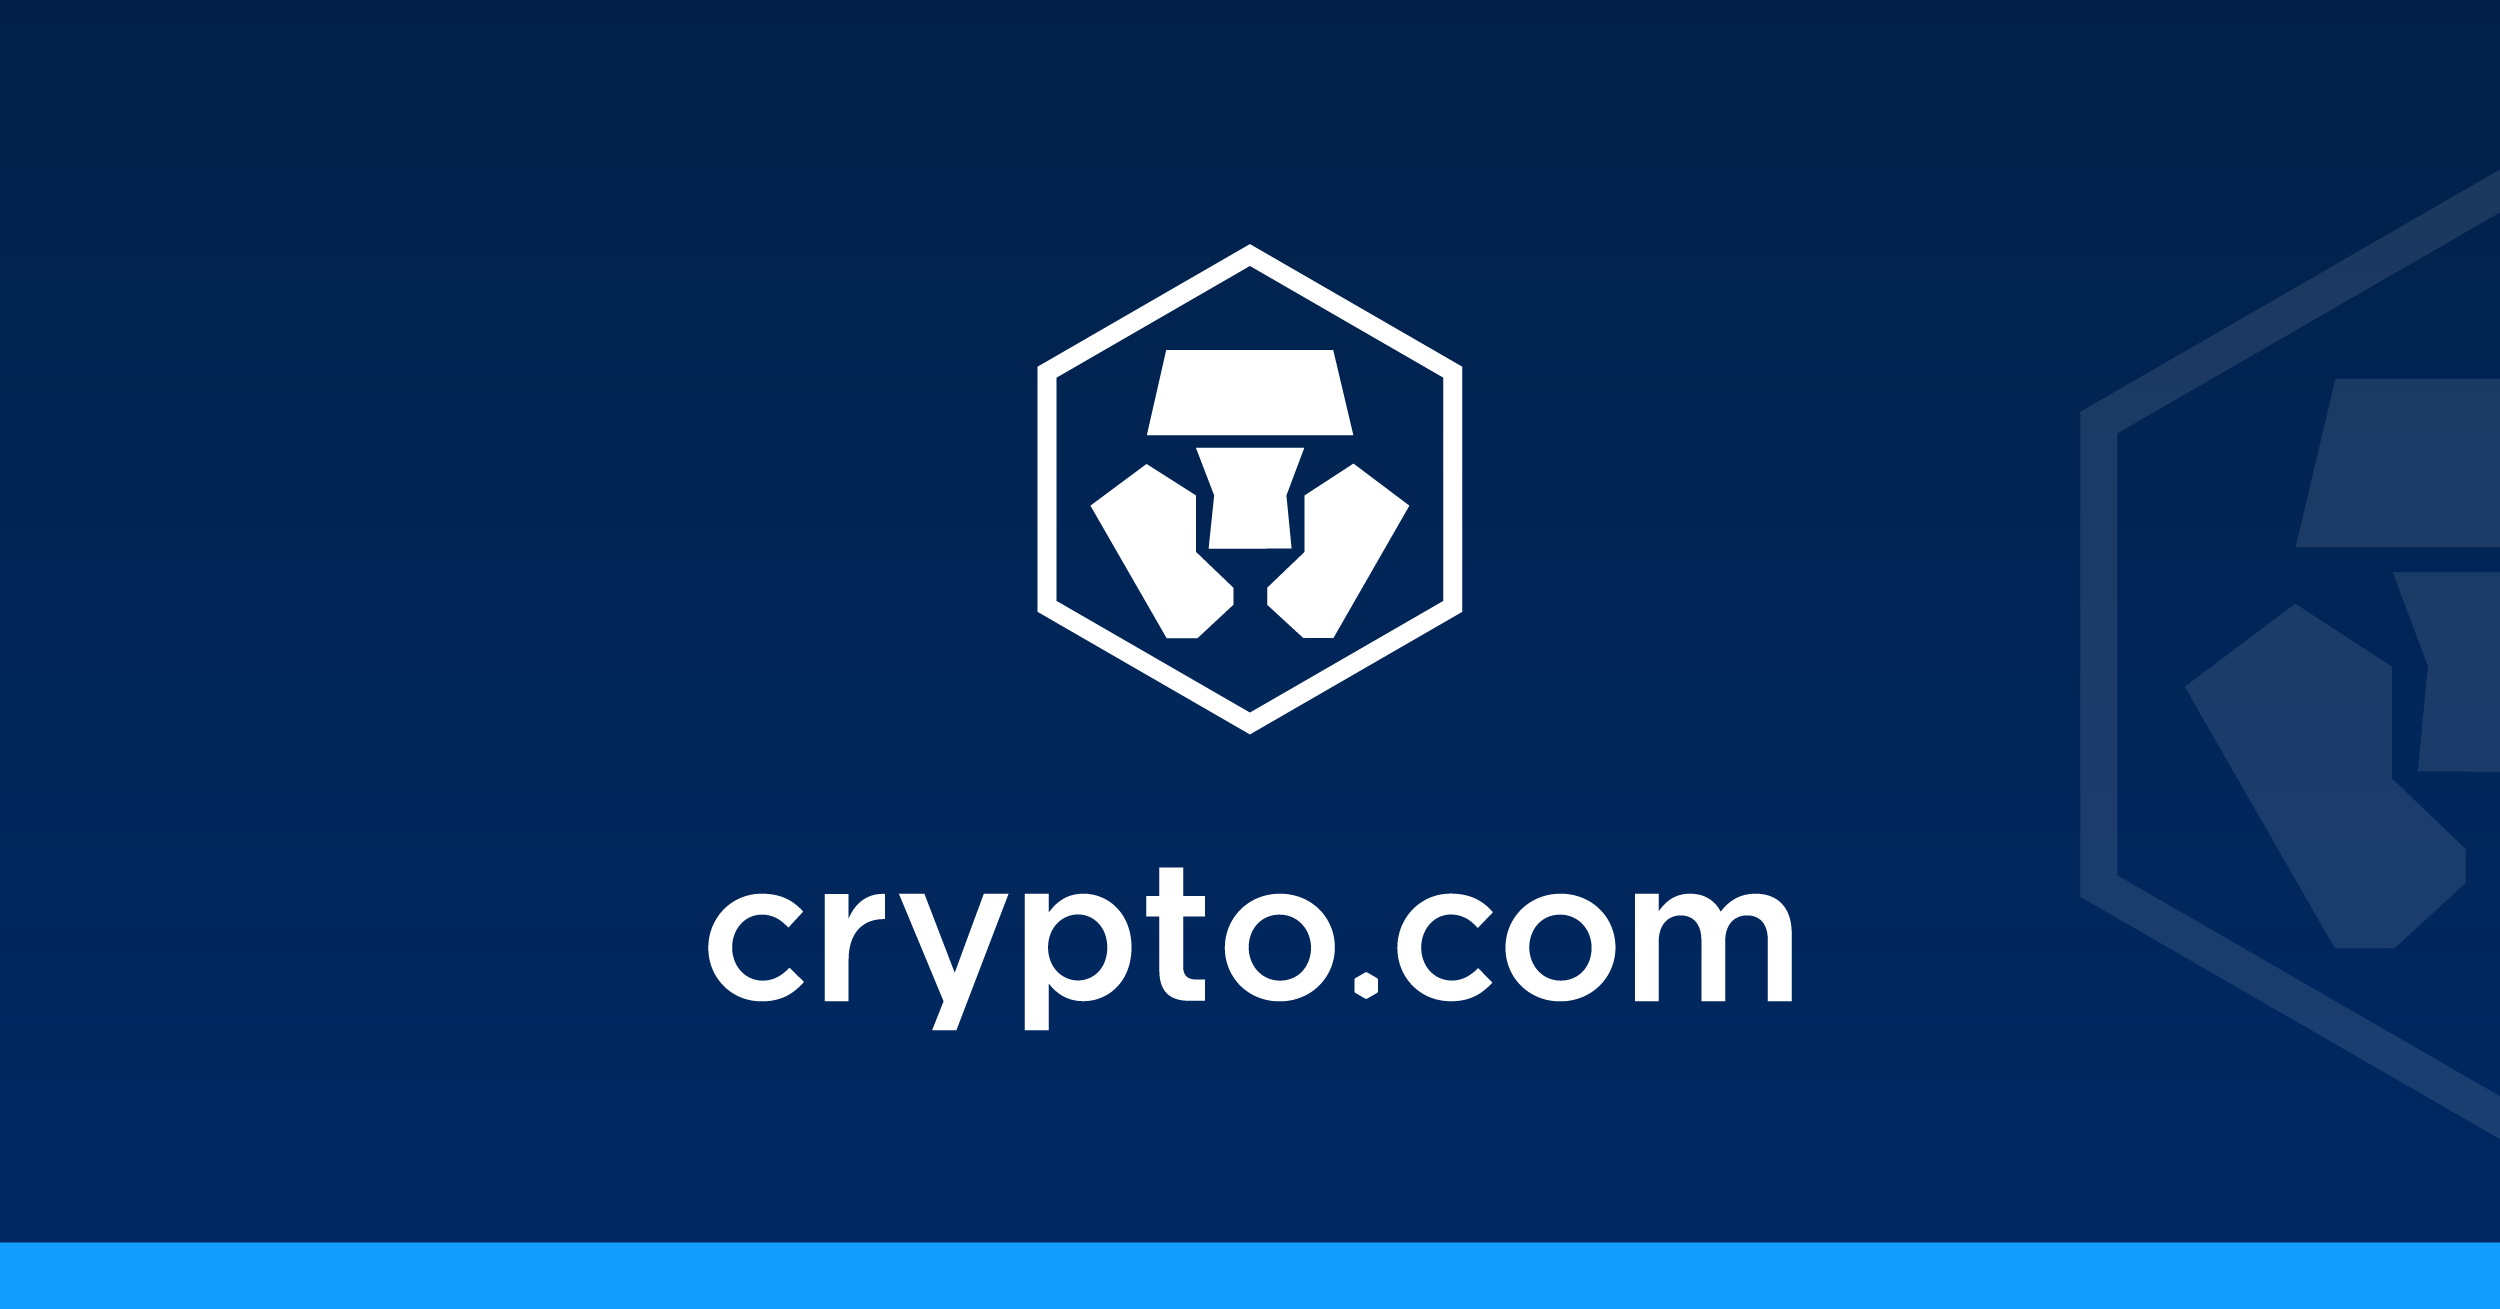 Inscrição Crypto.com